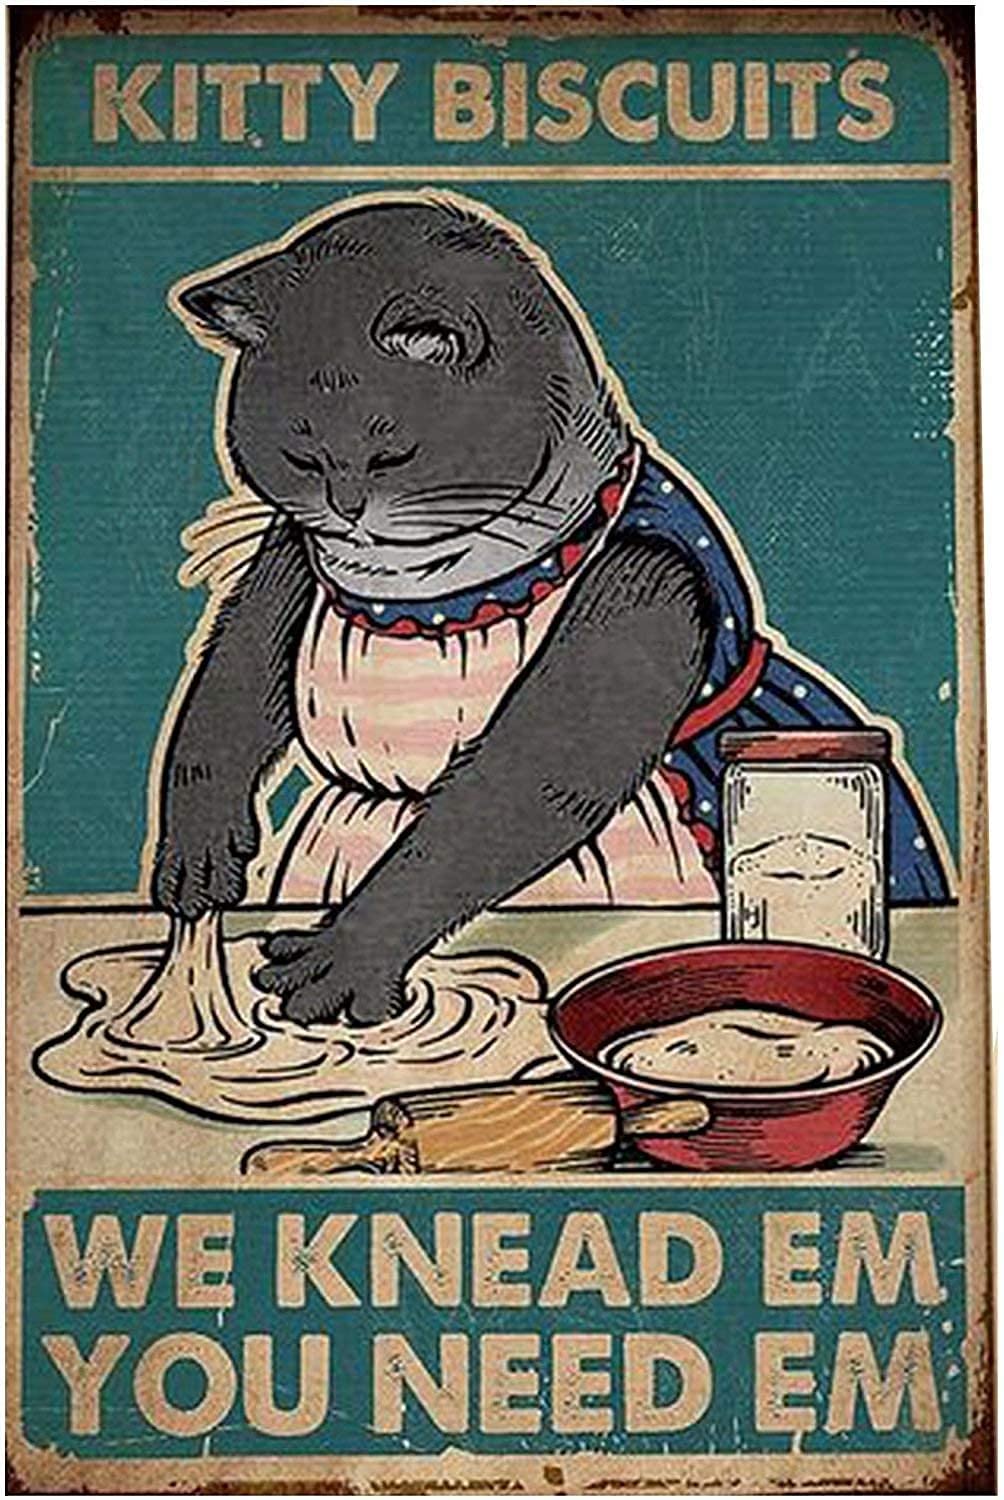 Decorative Metal Dog & Cat Posters: Humor Series #2